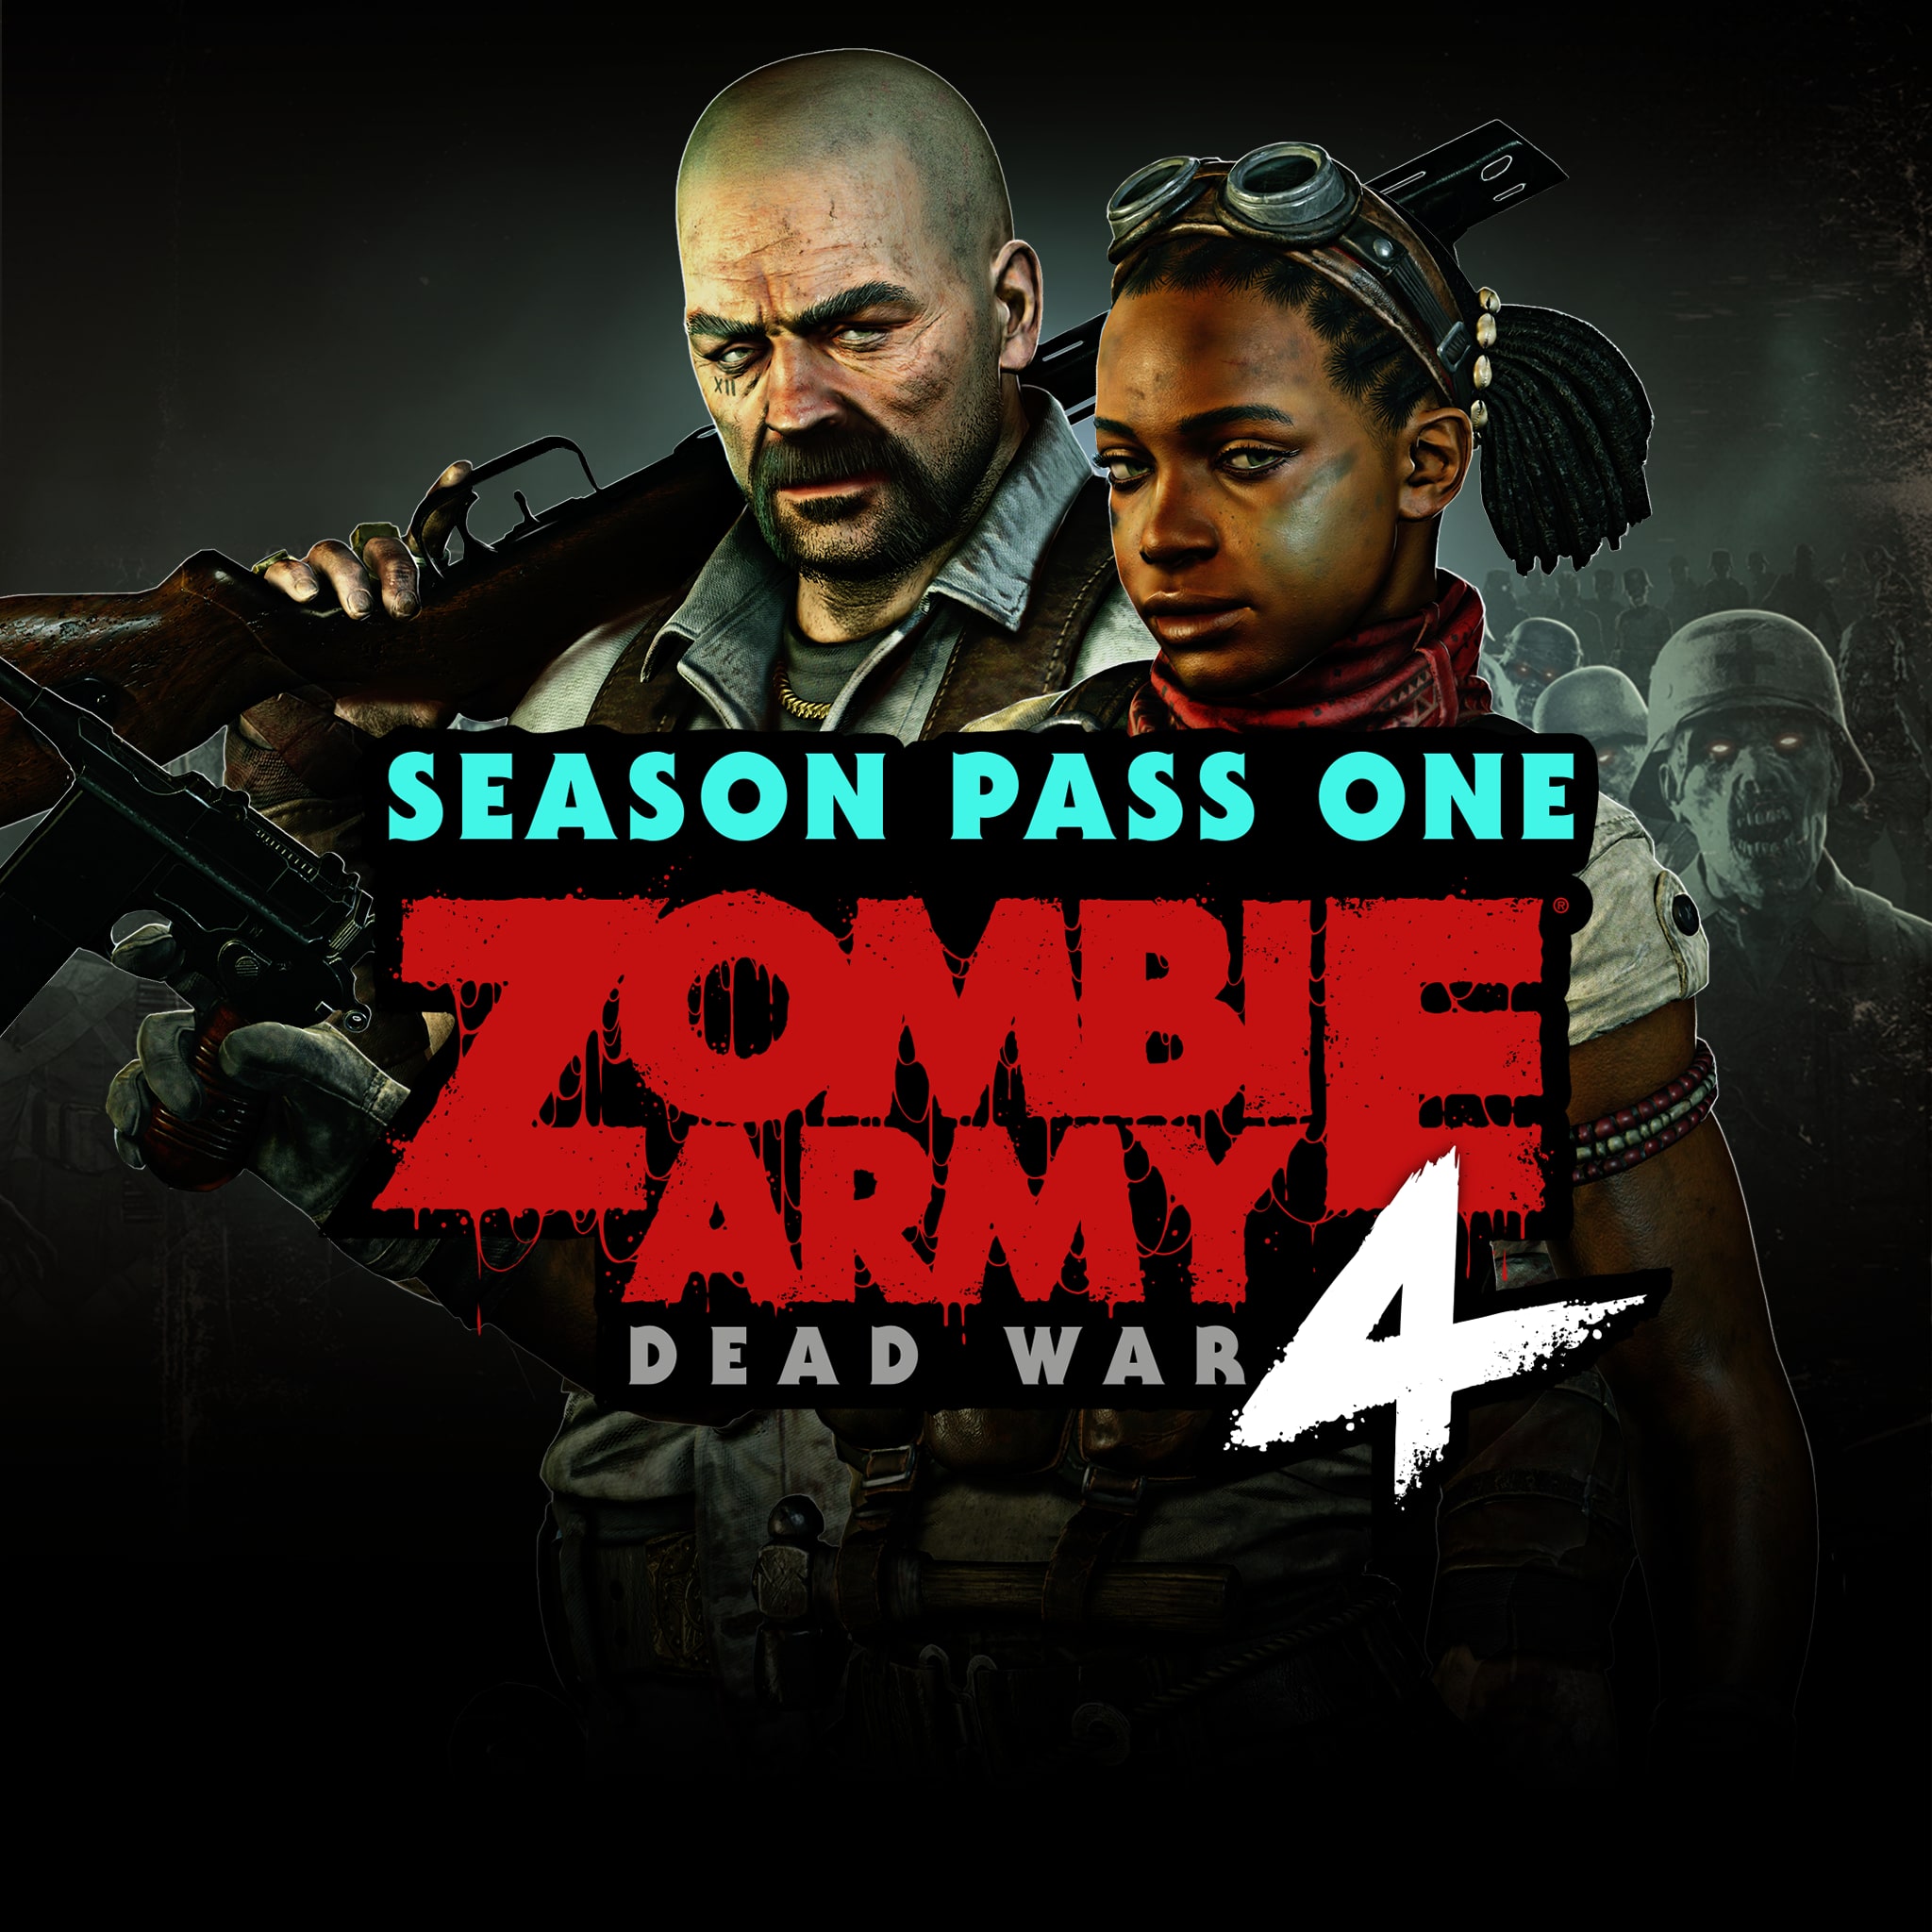 Zombie Army 4: Season Pass One